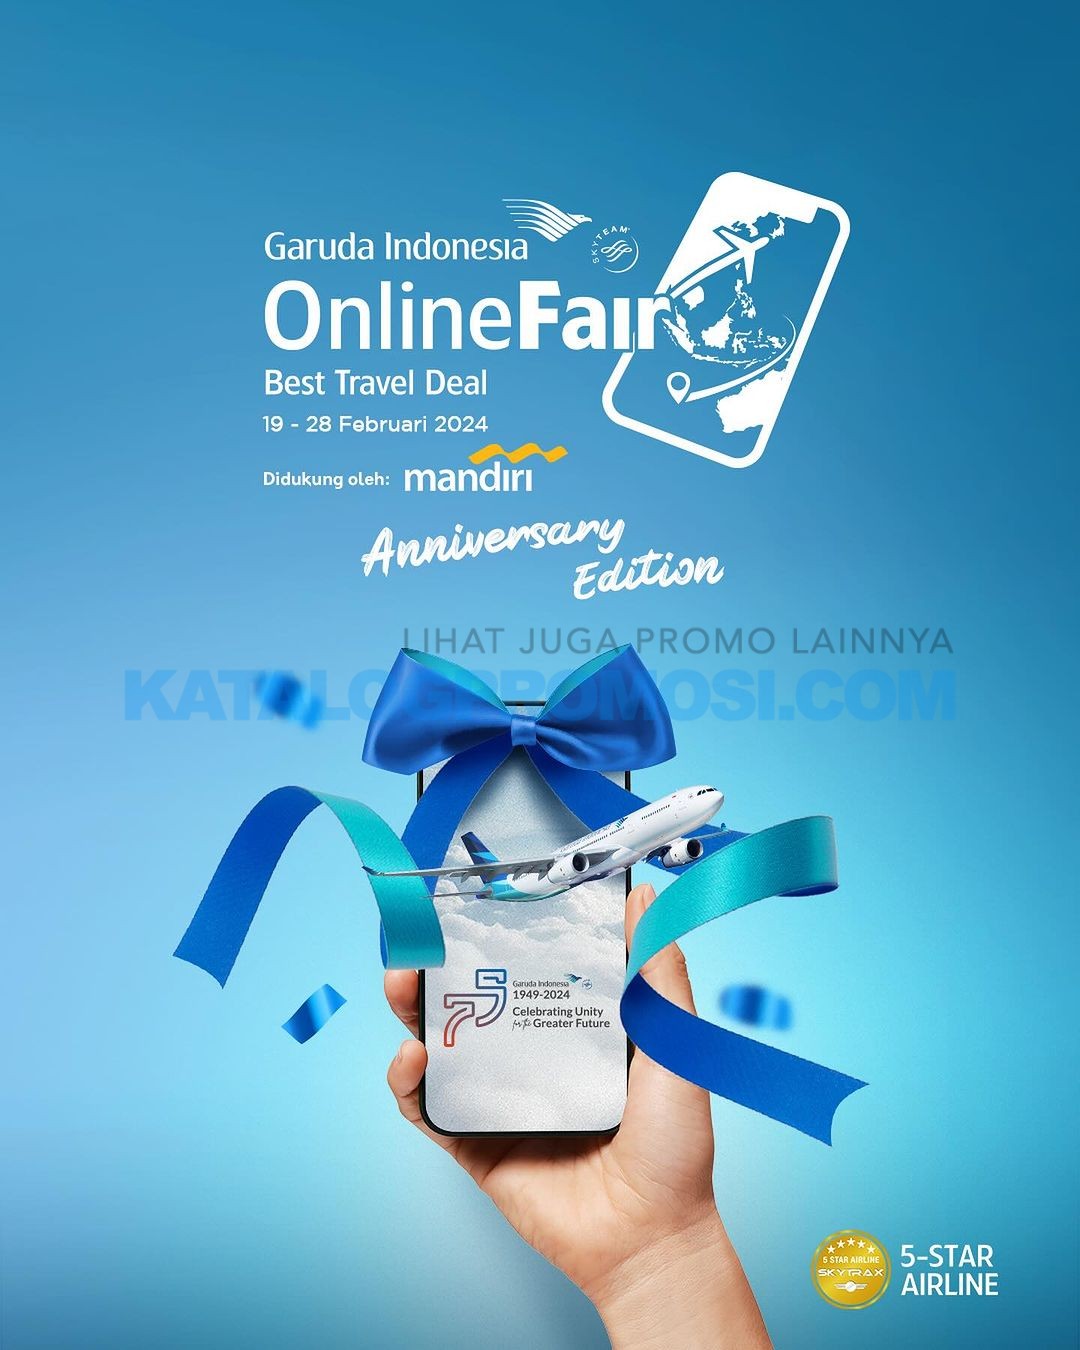 Garuda Indonesia Online Travel Fair 2023